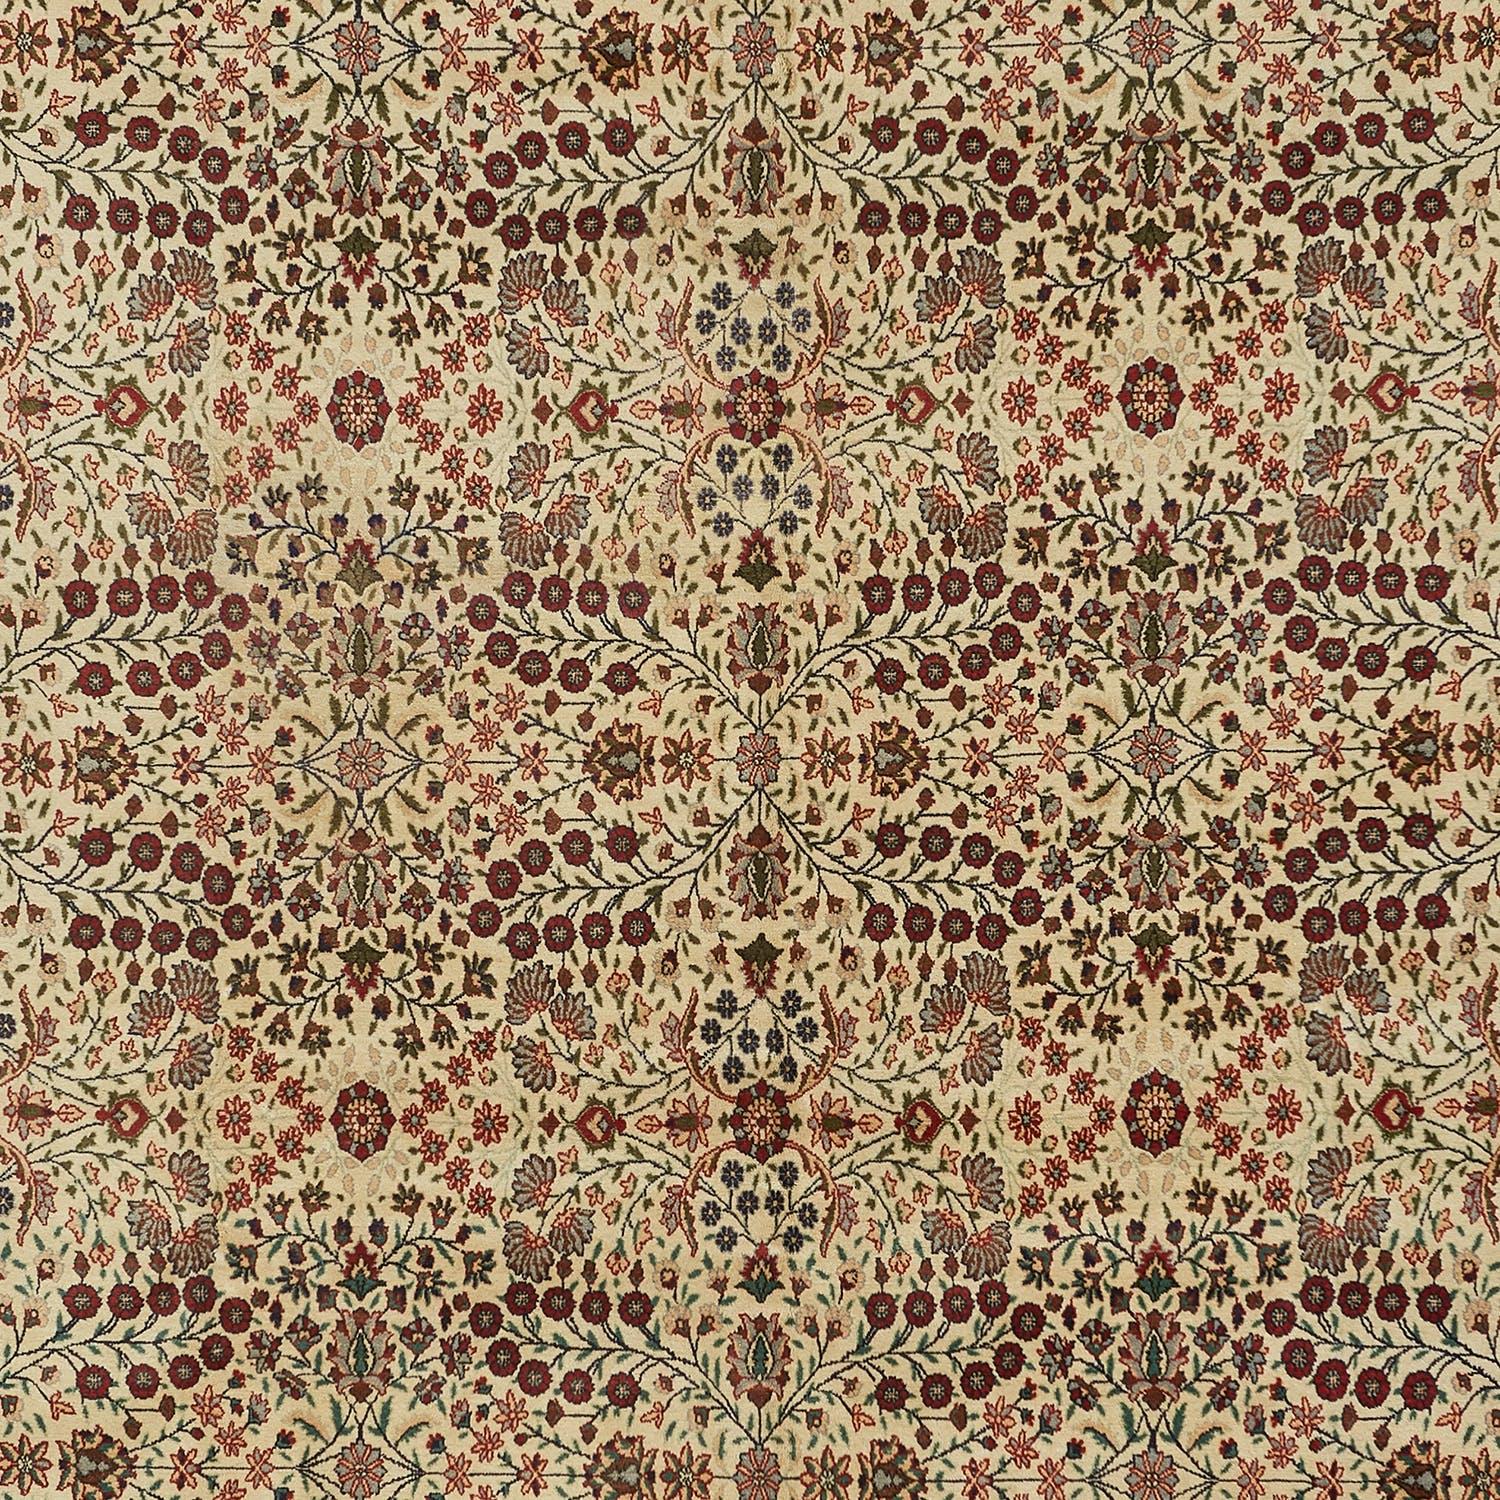 Un riche jeu de couleurs fait ressortir le design saisissant de ce tapis vintage en laine de Perse. Chaque détail tissé à la main est un monde en soi dans cette pièce d'art fonctionnel digne d'un héritage.